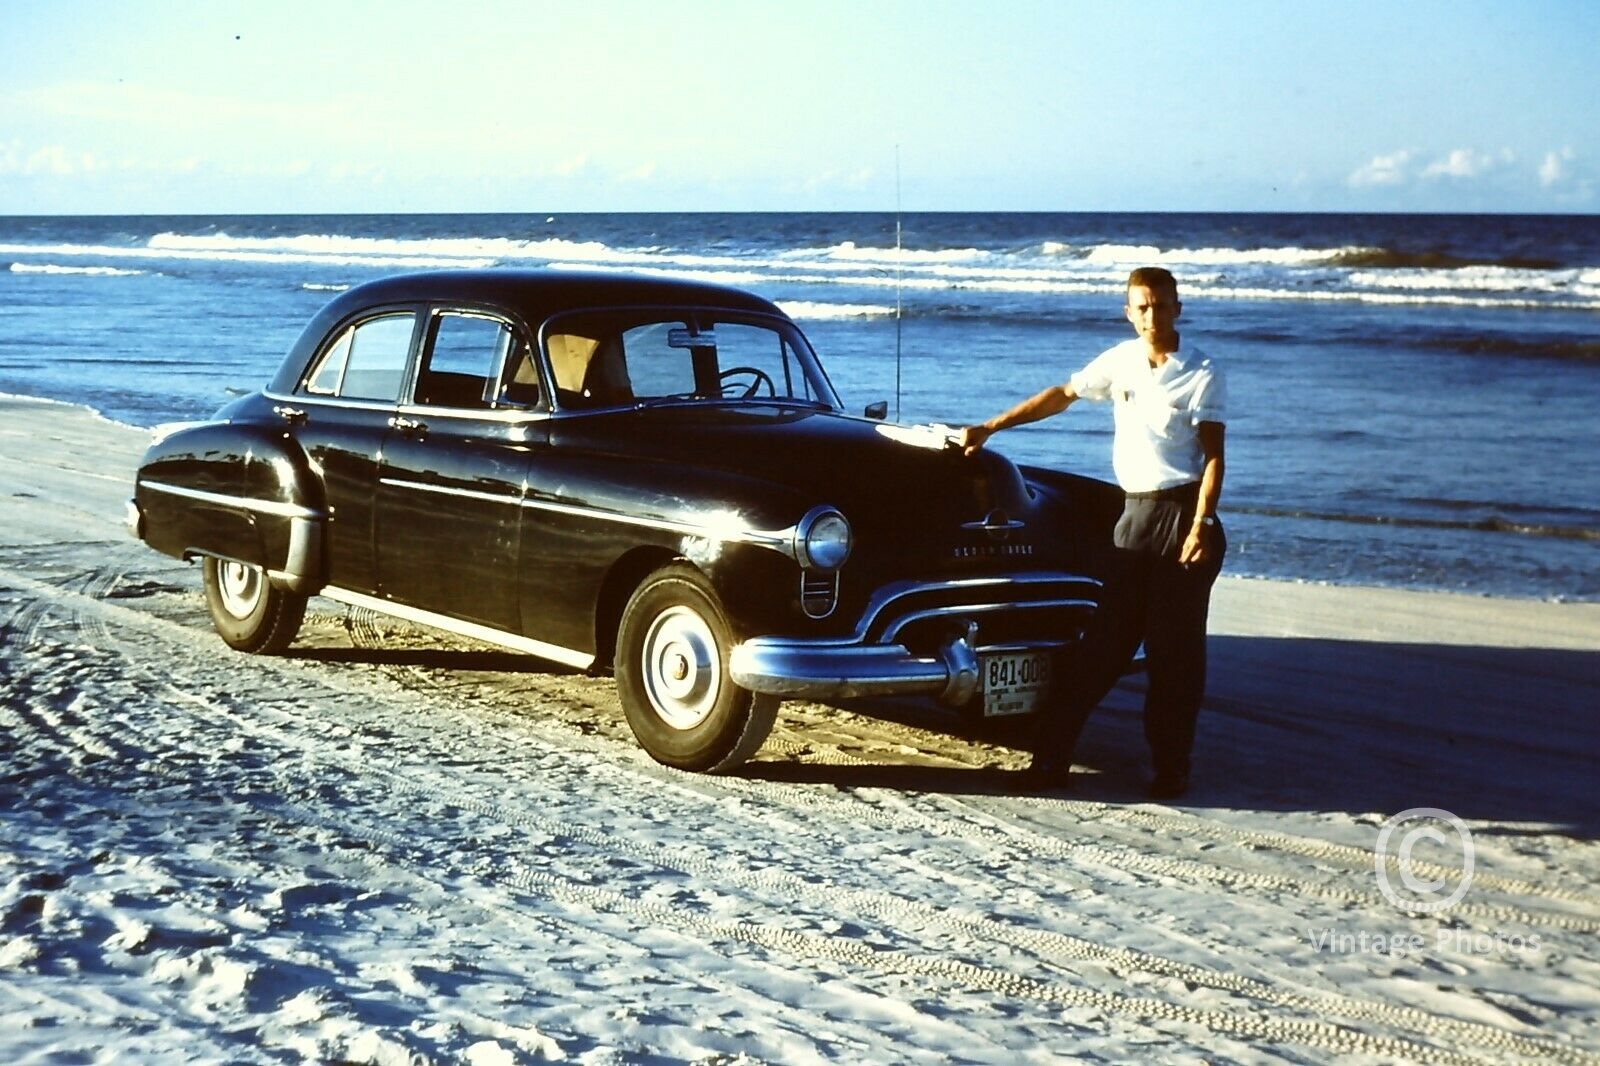 1950s Classic Car on Beach